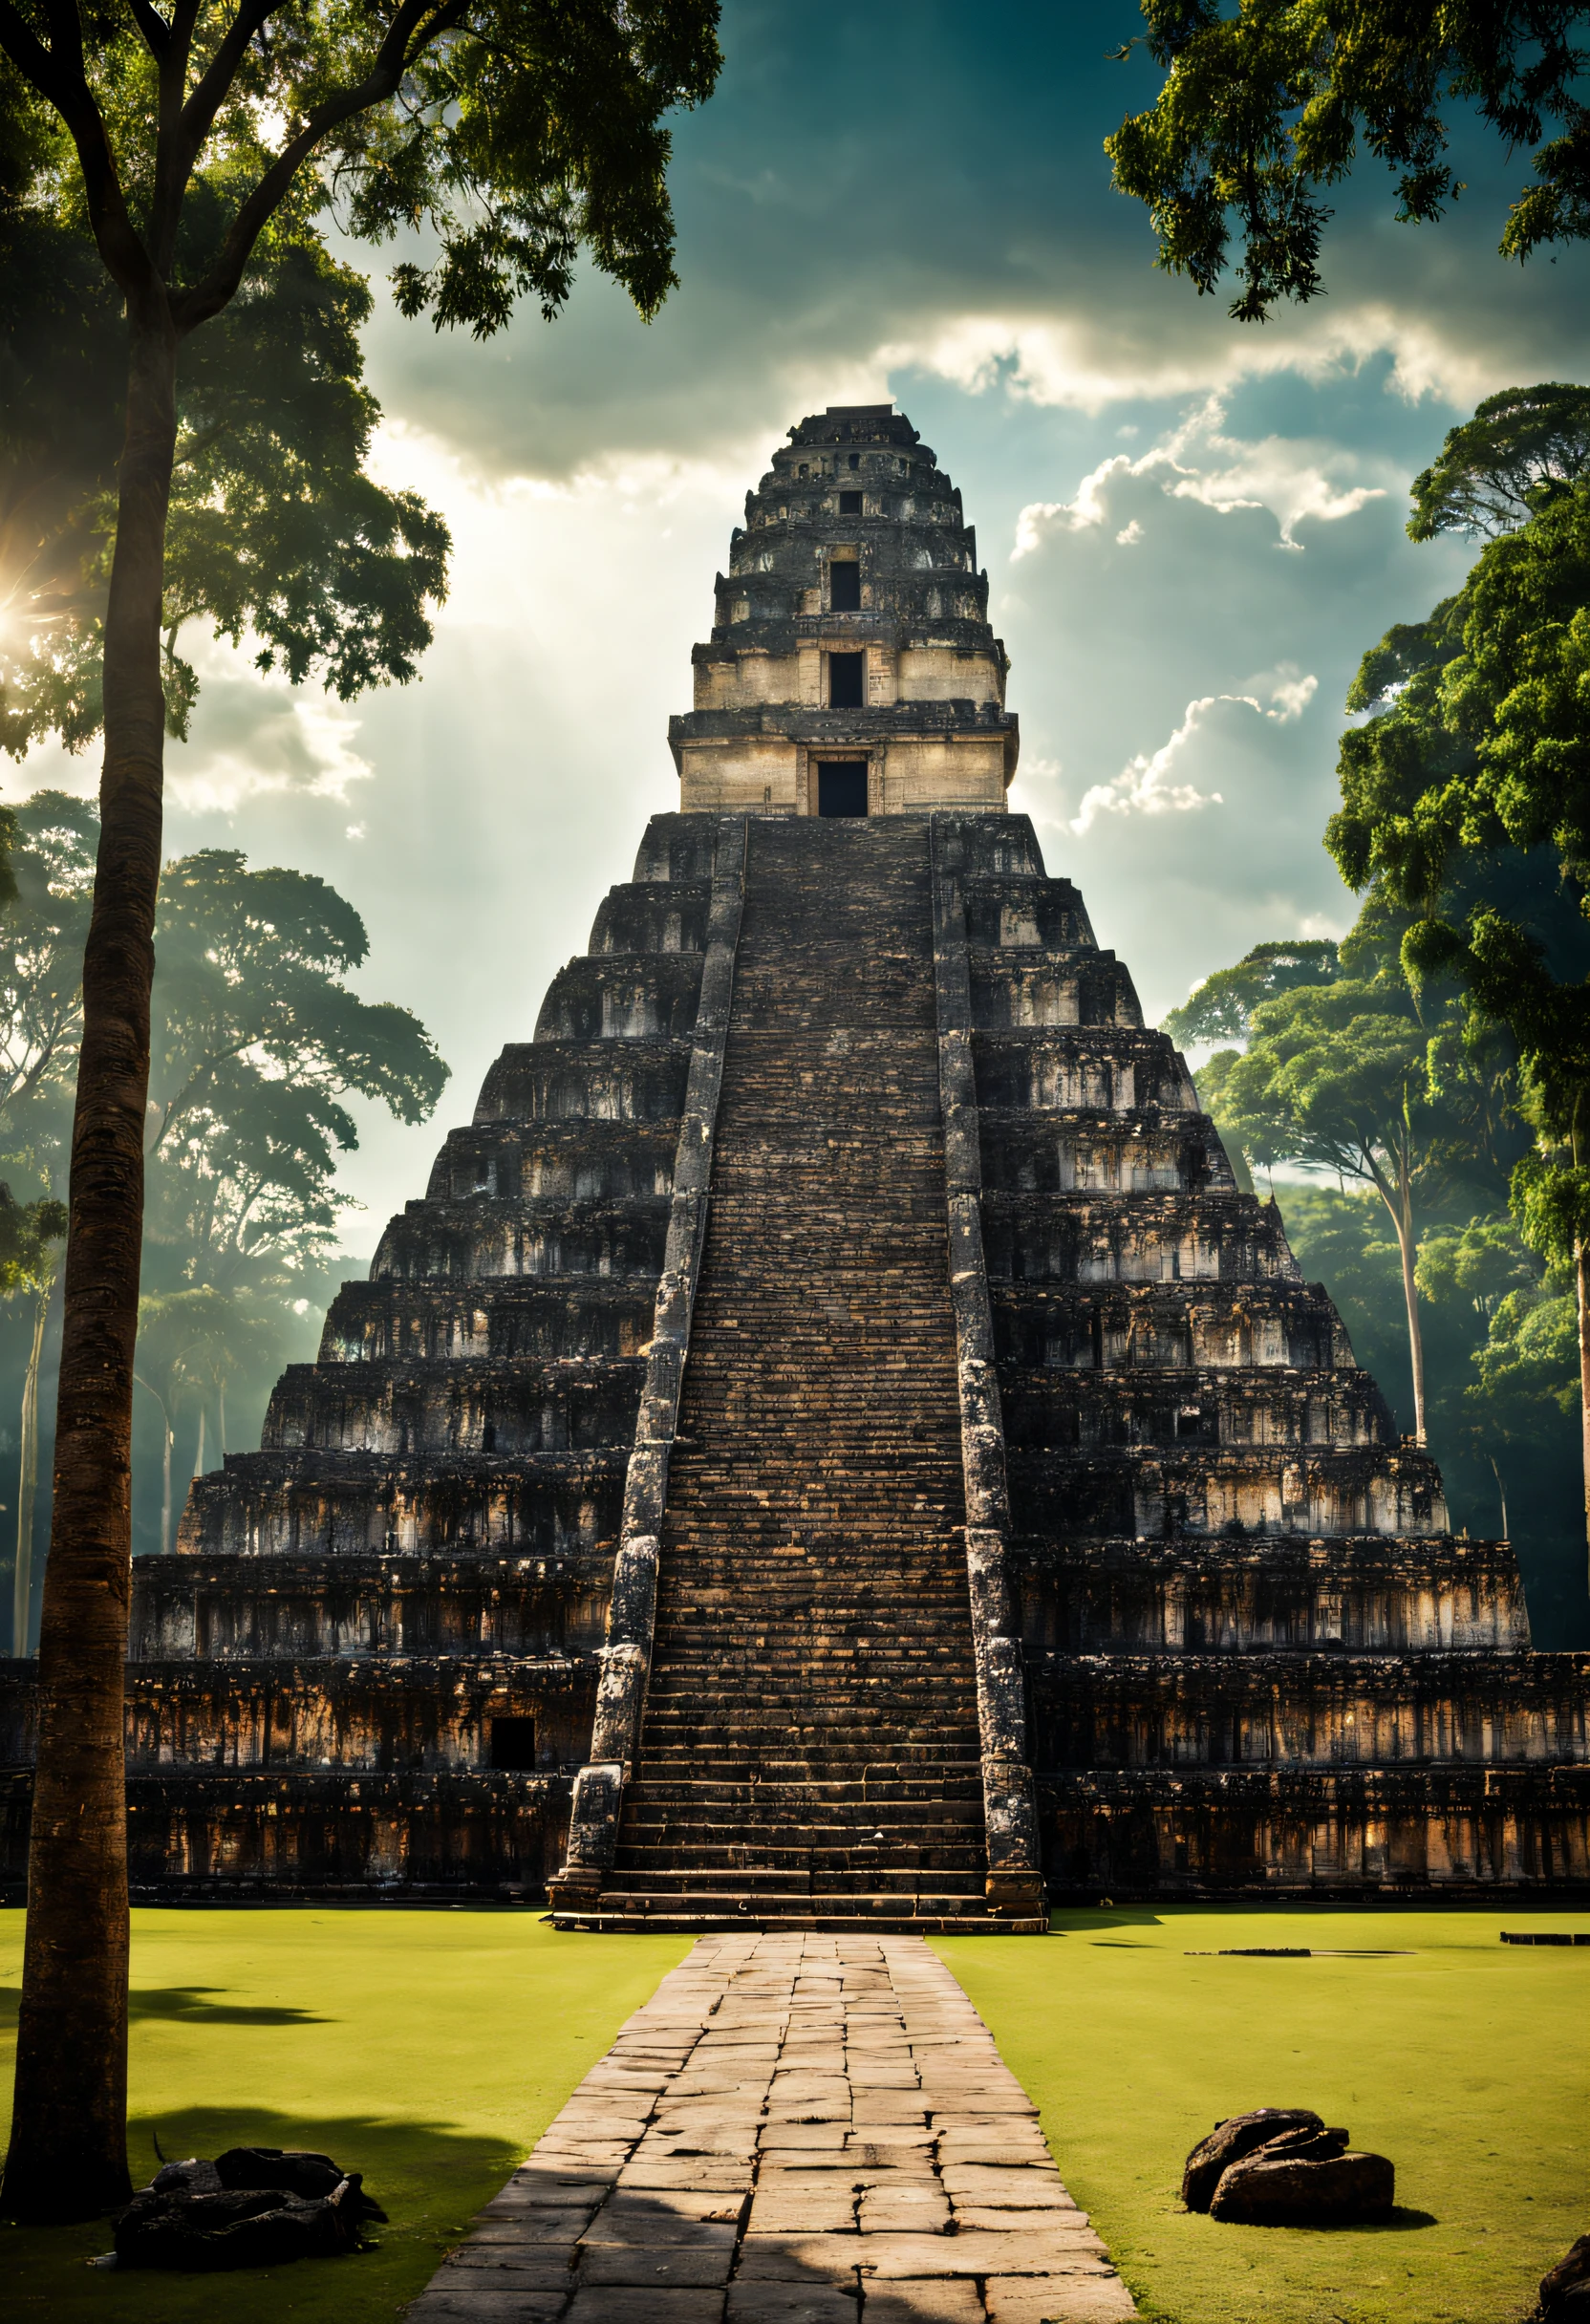 une photo épique du temple du grand jaguar, cinématique, place, des arbres, forêt, cité maya, chef-d&#39;œuvre, meilleure qualité